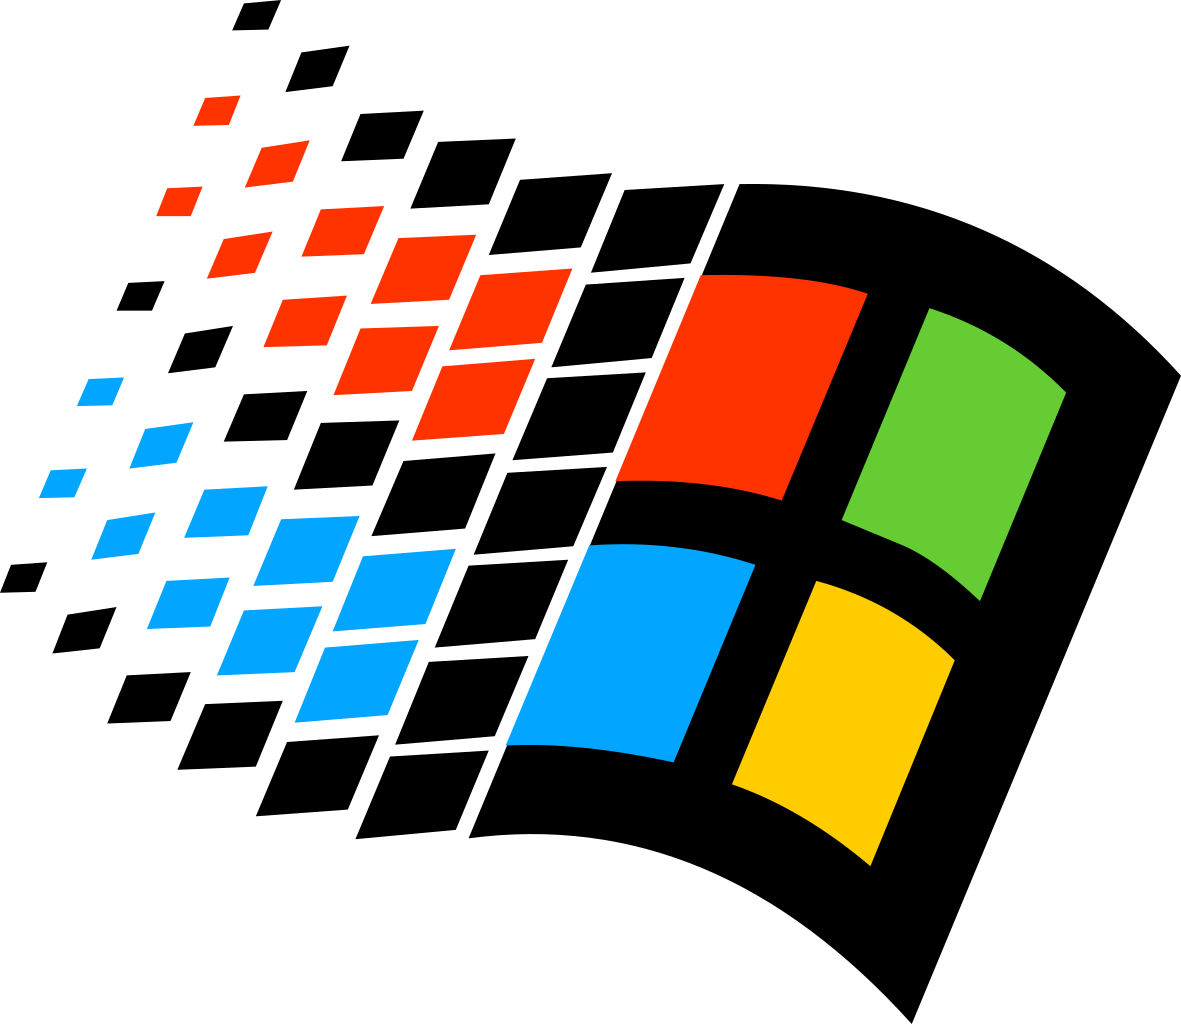 Windows Logo PNG File Download Free